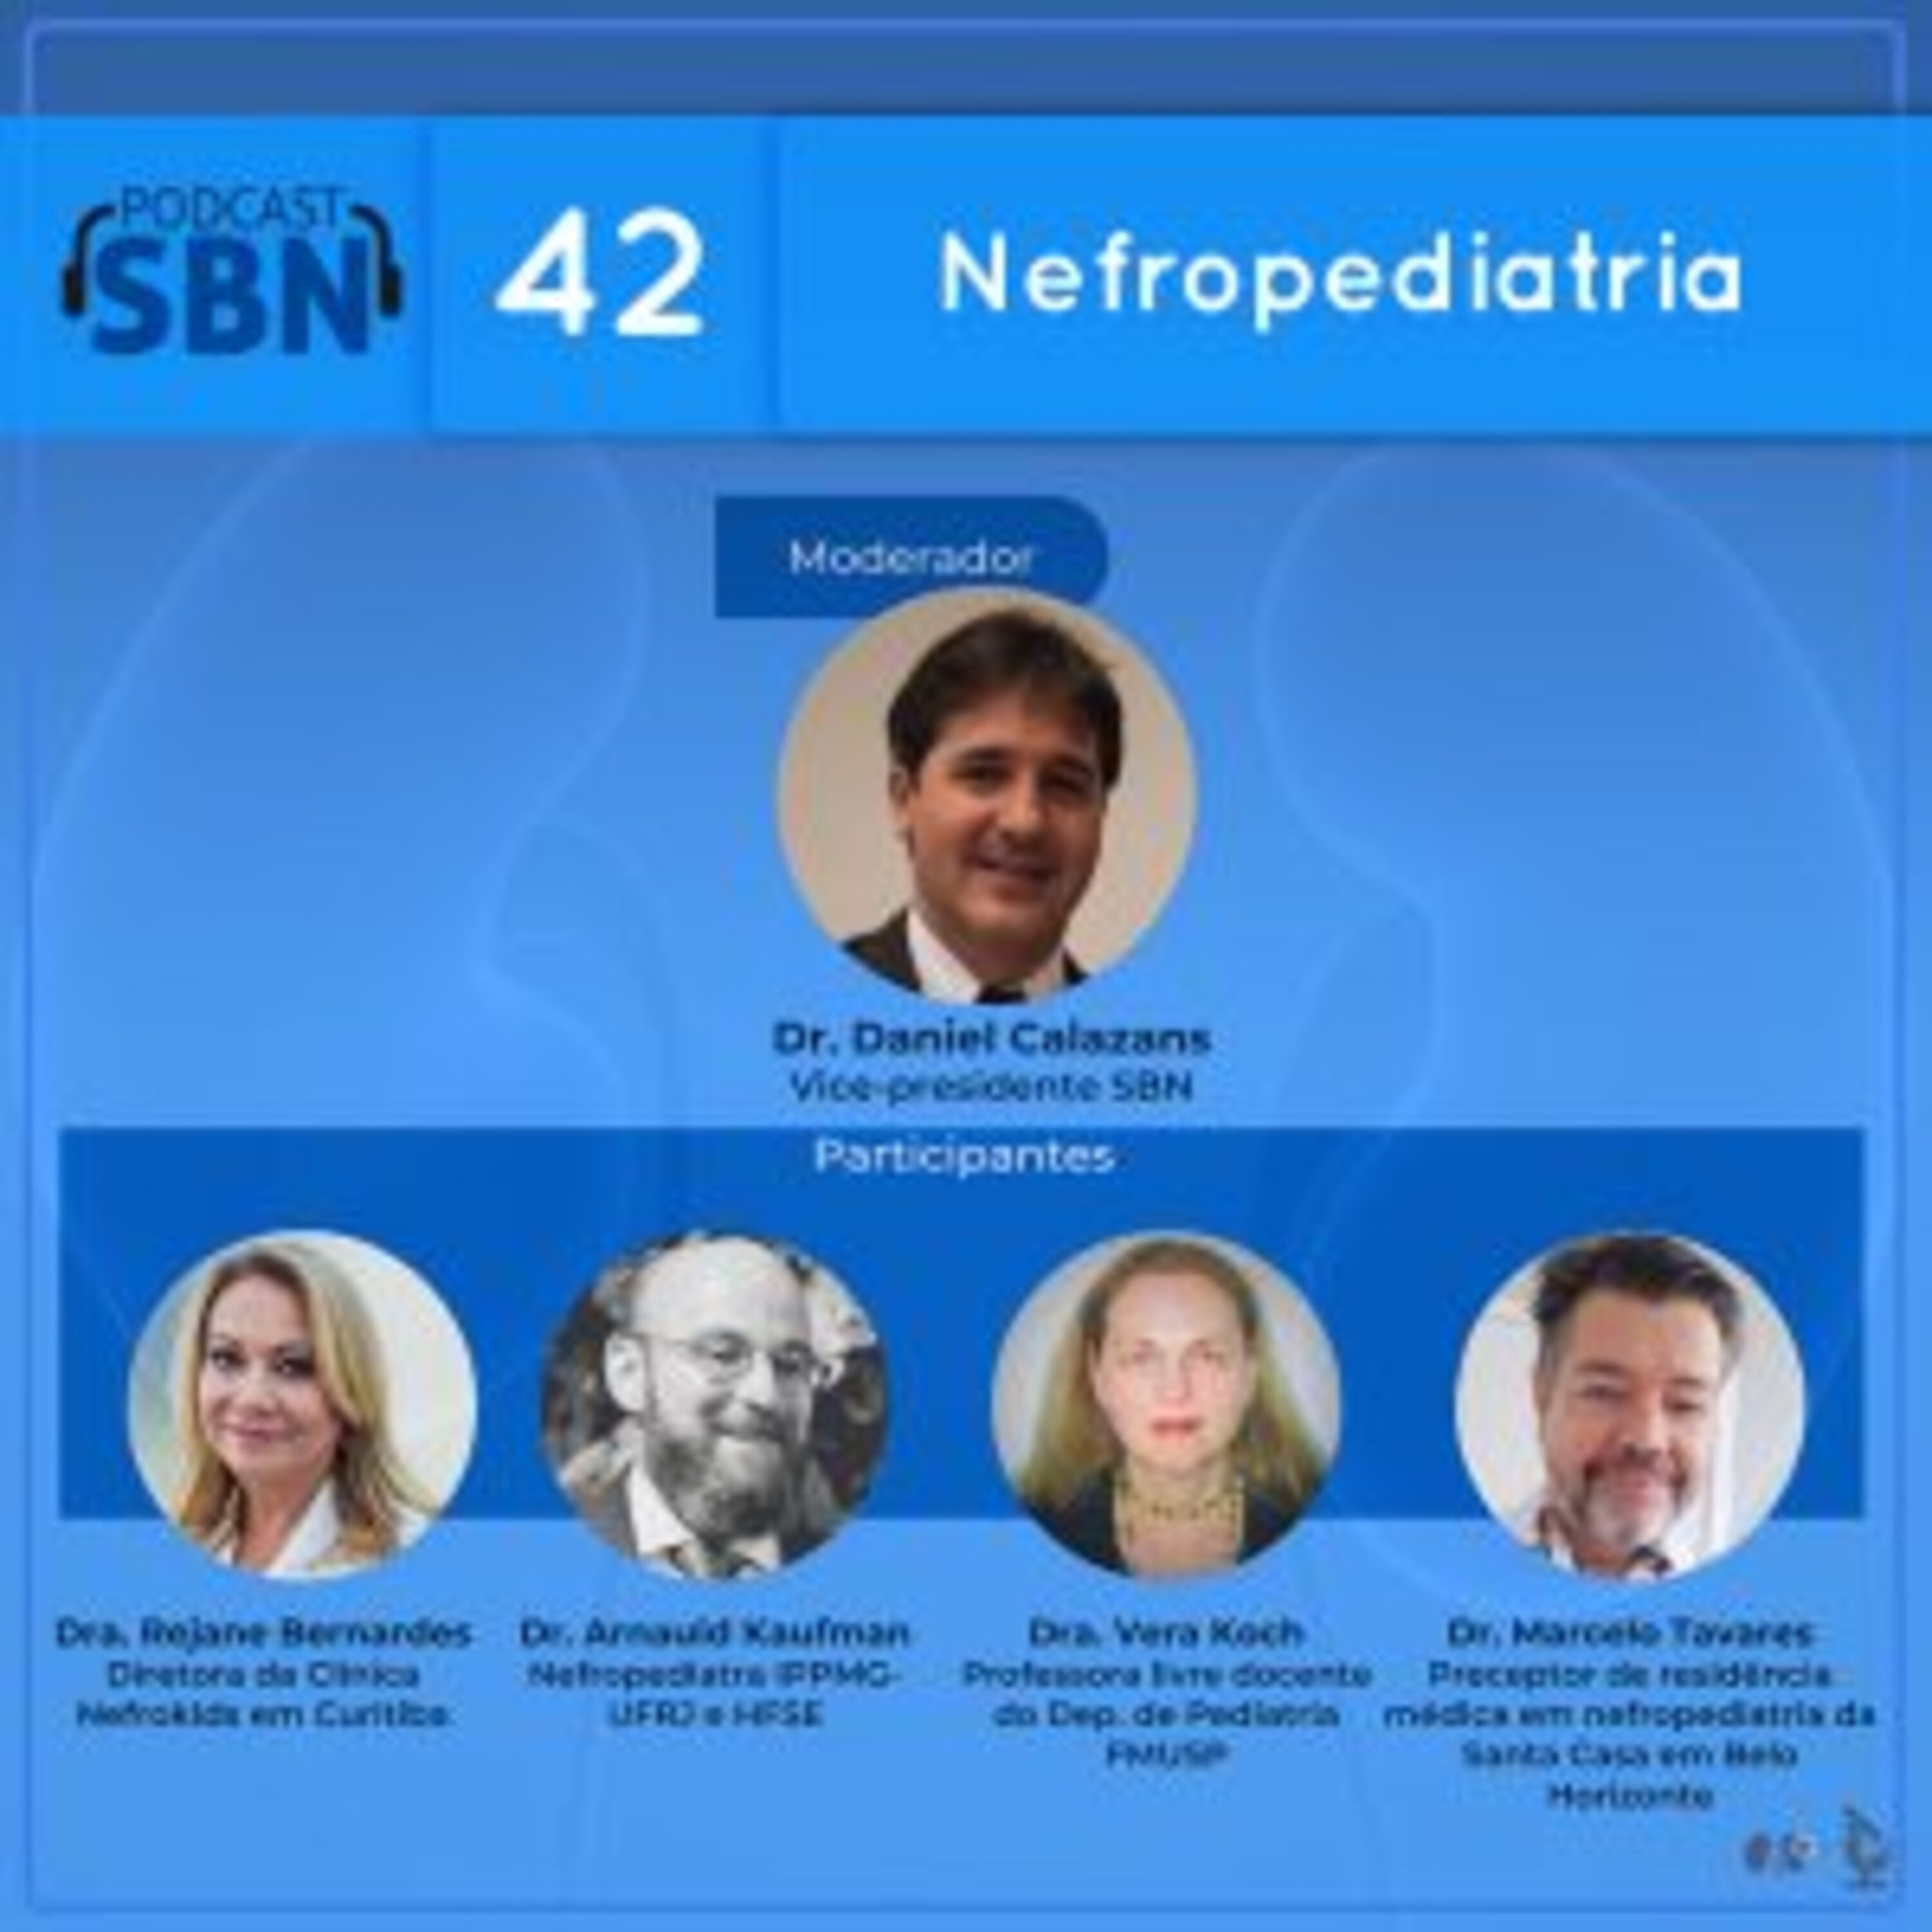 Nefropediatria (SBN #42)